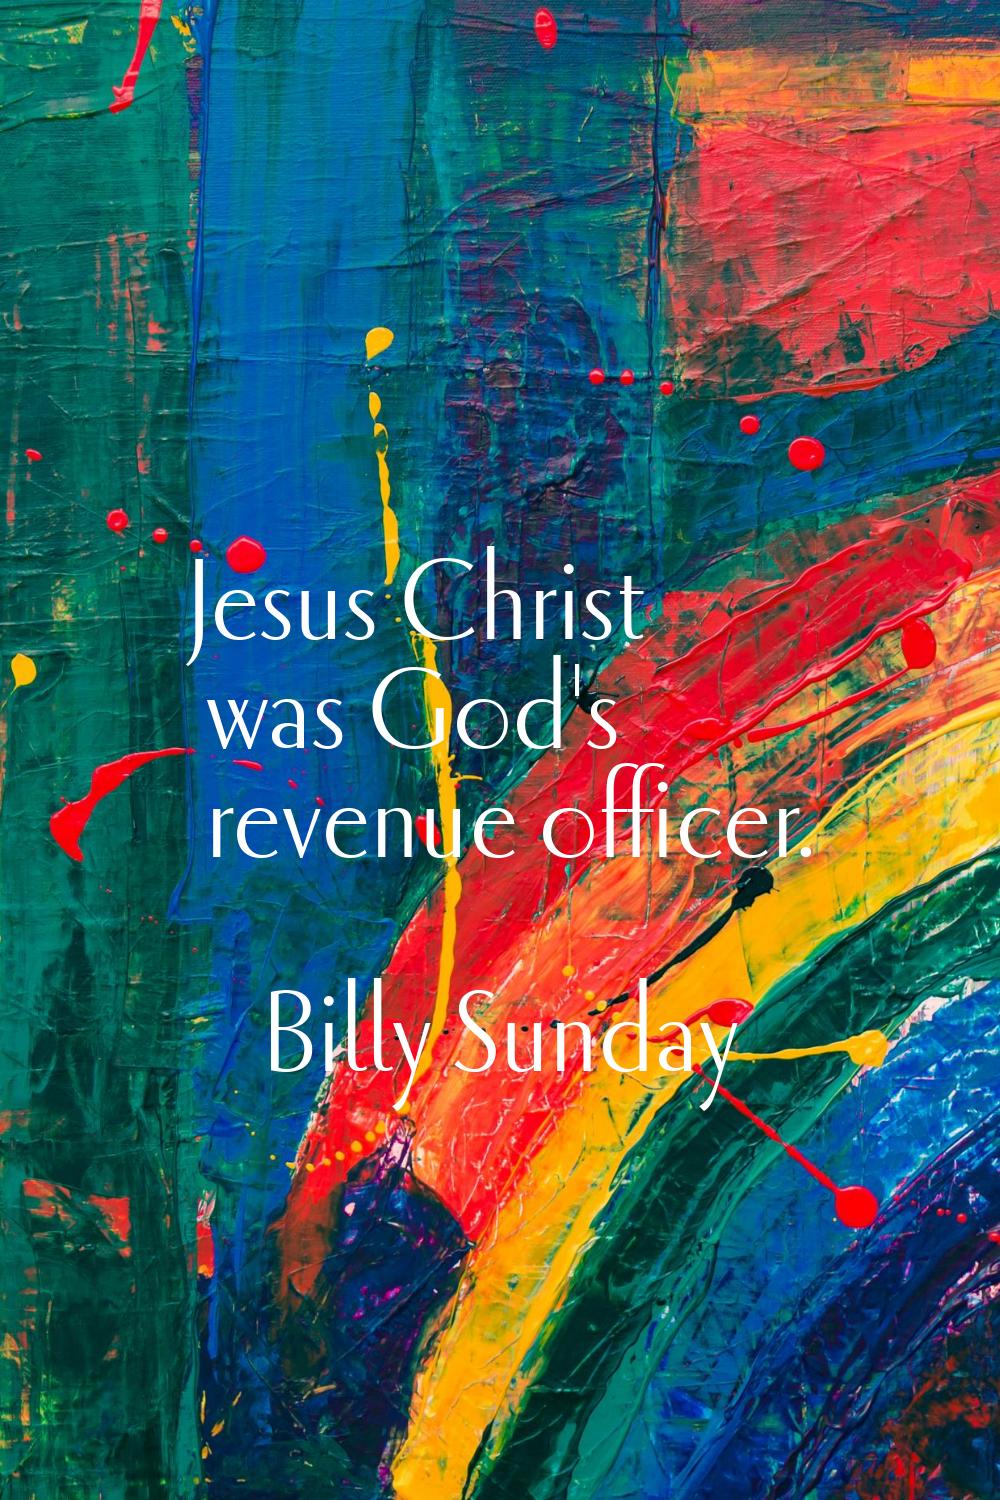 Jesus Christ was God's revenue officer.